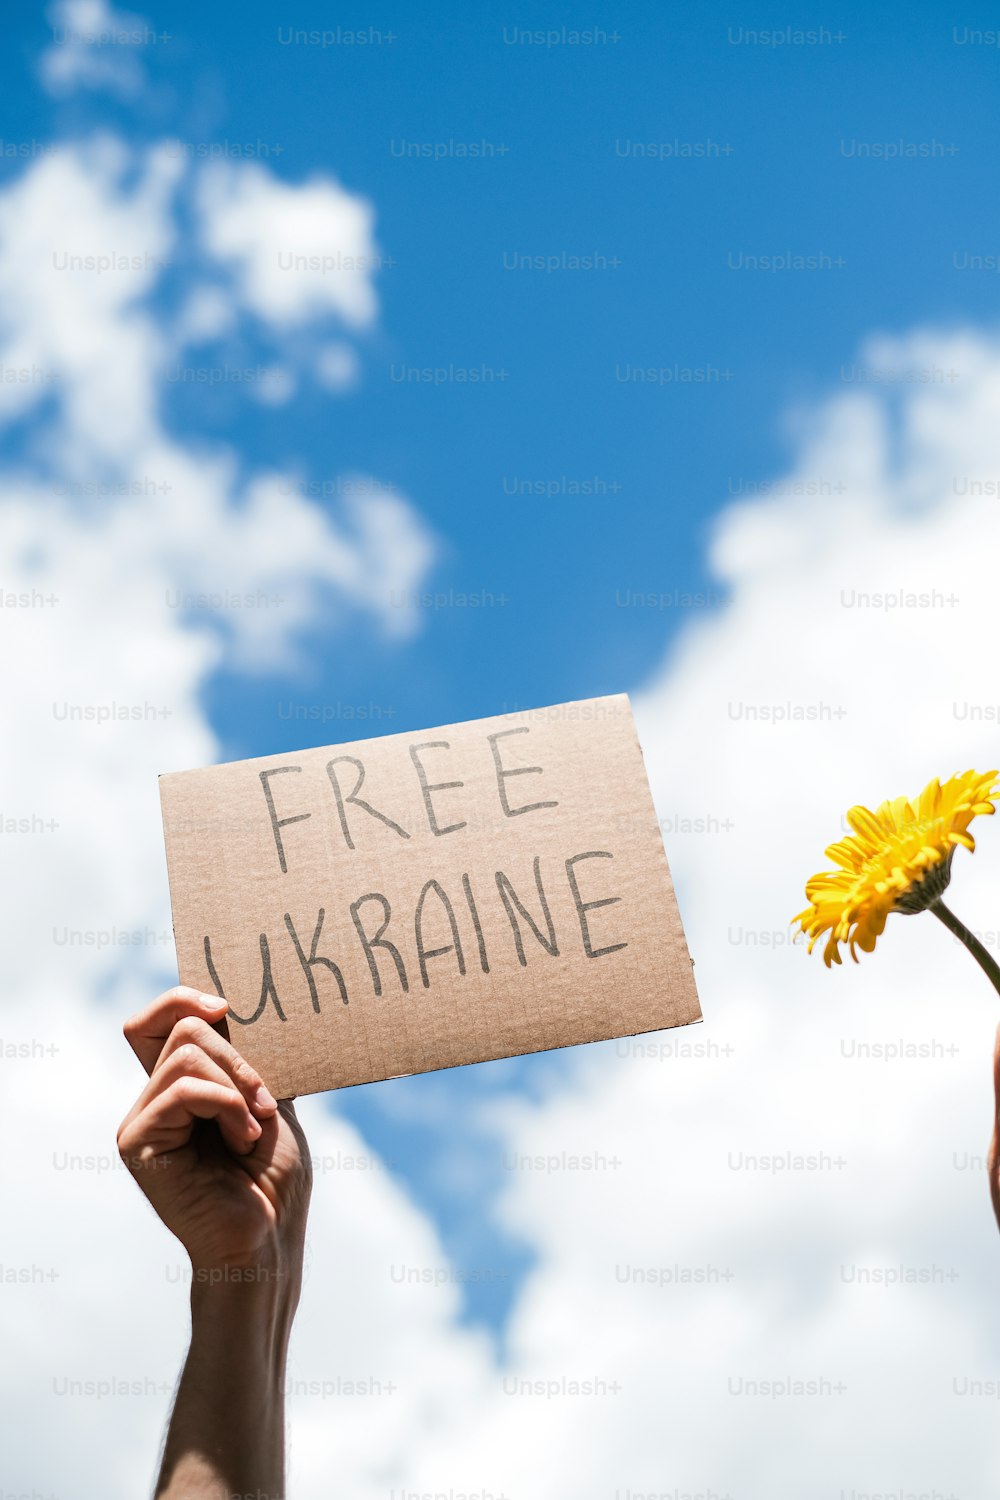 自由ウクライナと書かれた看板を持って�いる人